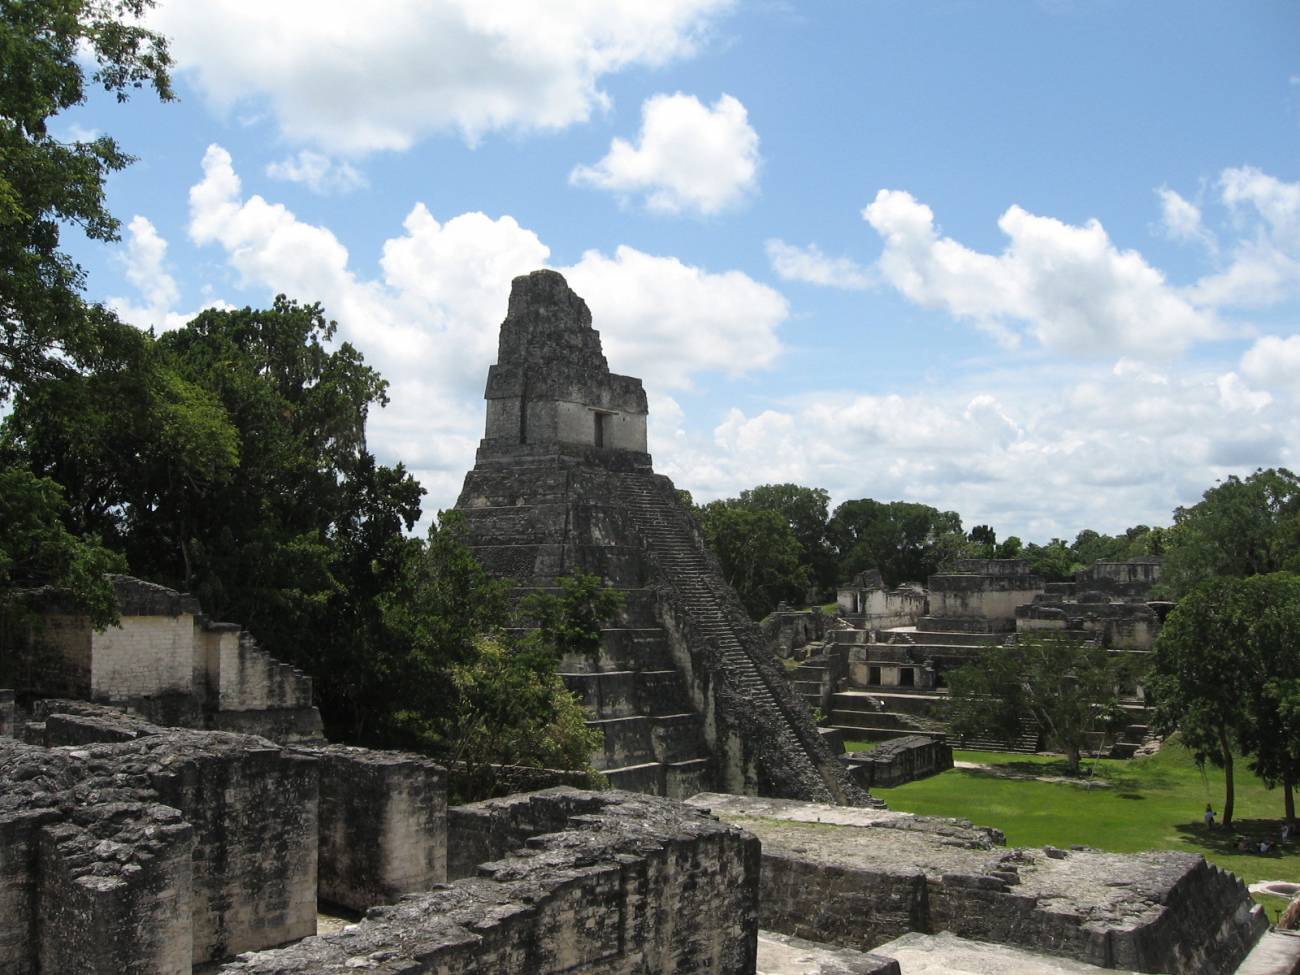 Templo del reino de Tikal, uno de los más relevantes del periodo clásico maya.